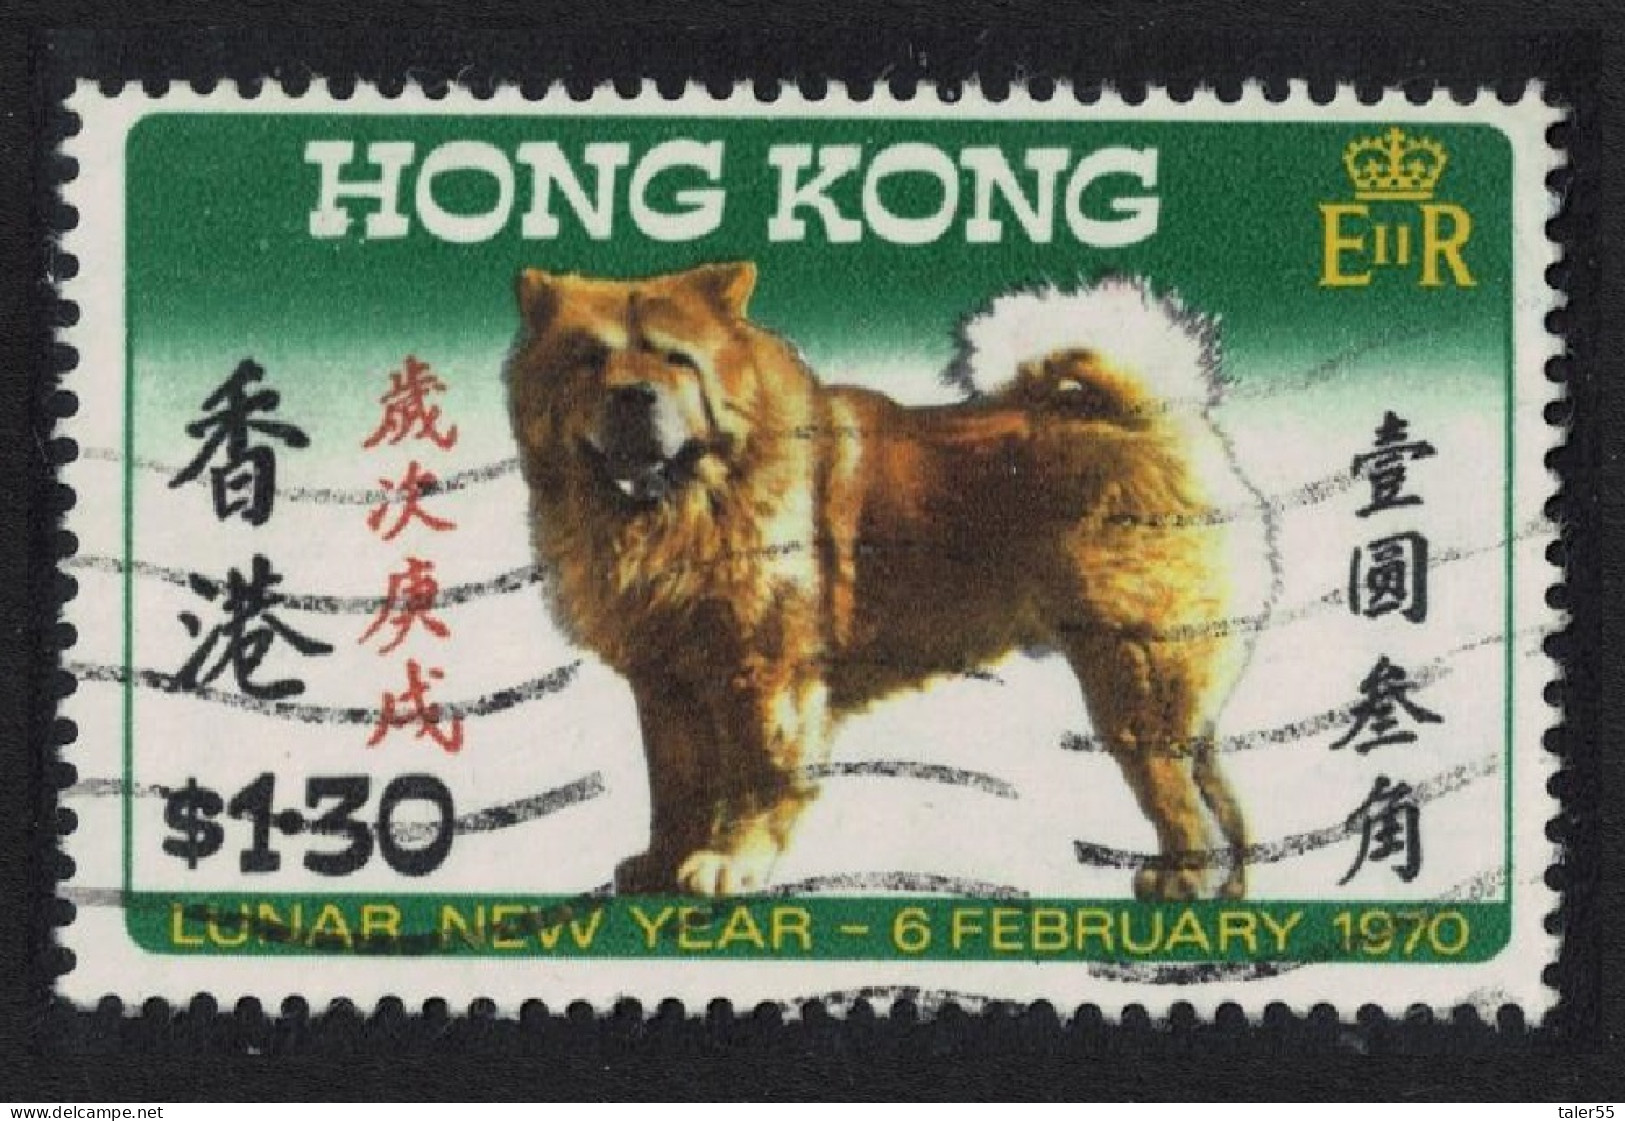 Hong Kong Chinese New Year. Year Of The Dog $1.30 1970 Canc SG#262 - Gebruikt